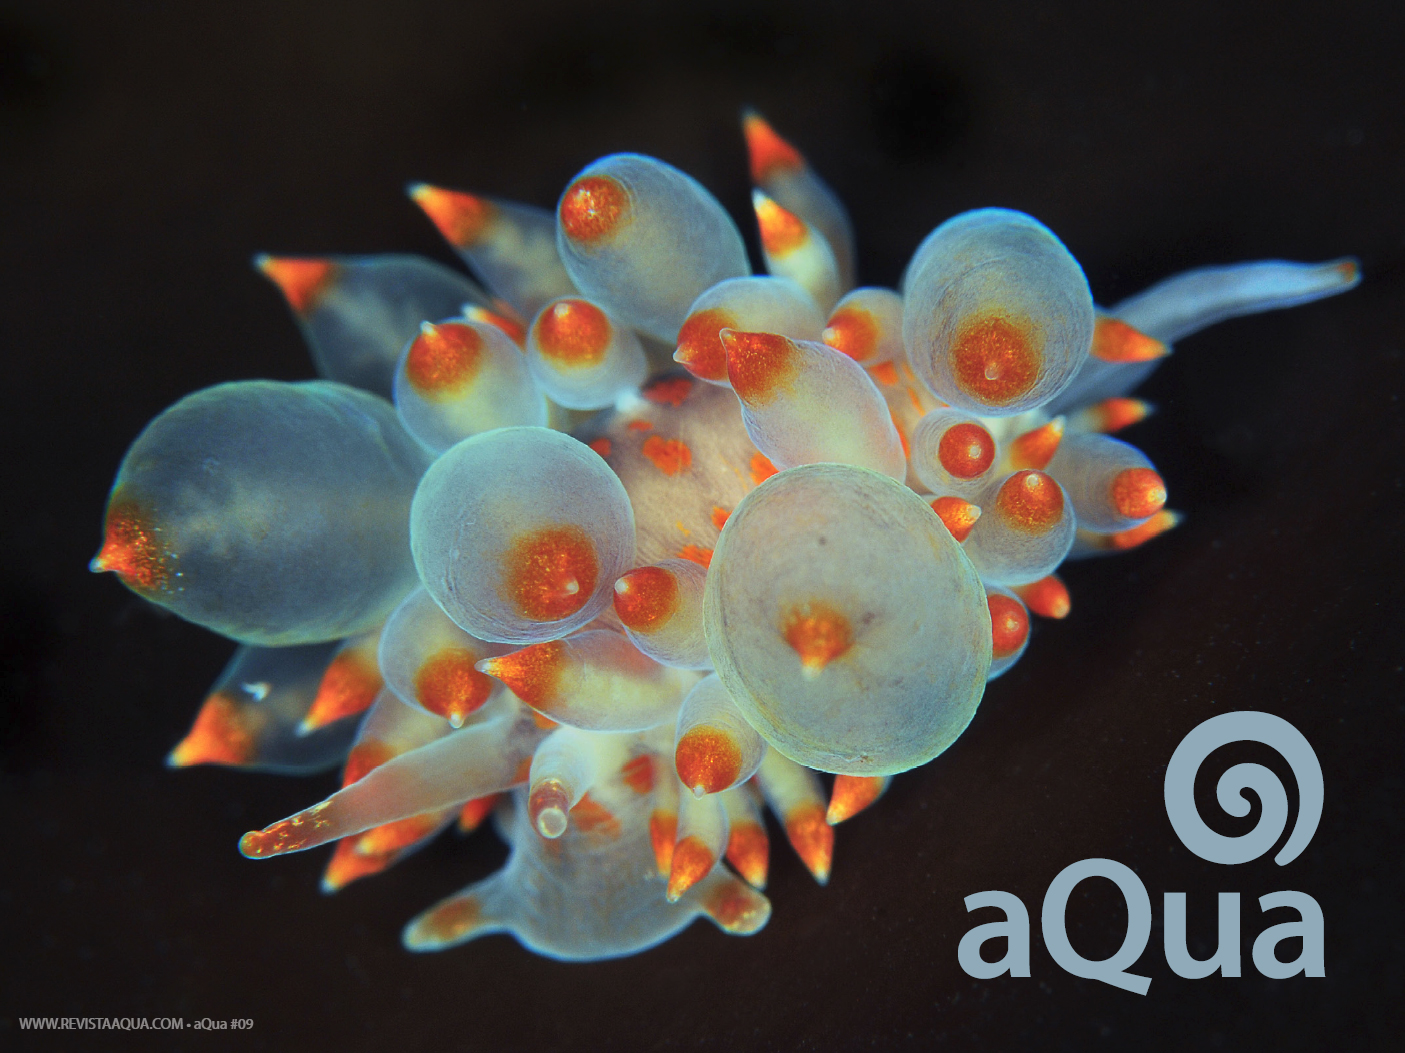 Aqua 9 Nudibranchs 00a